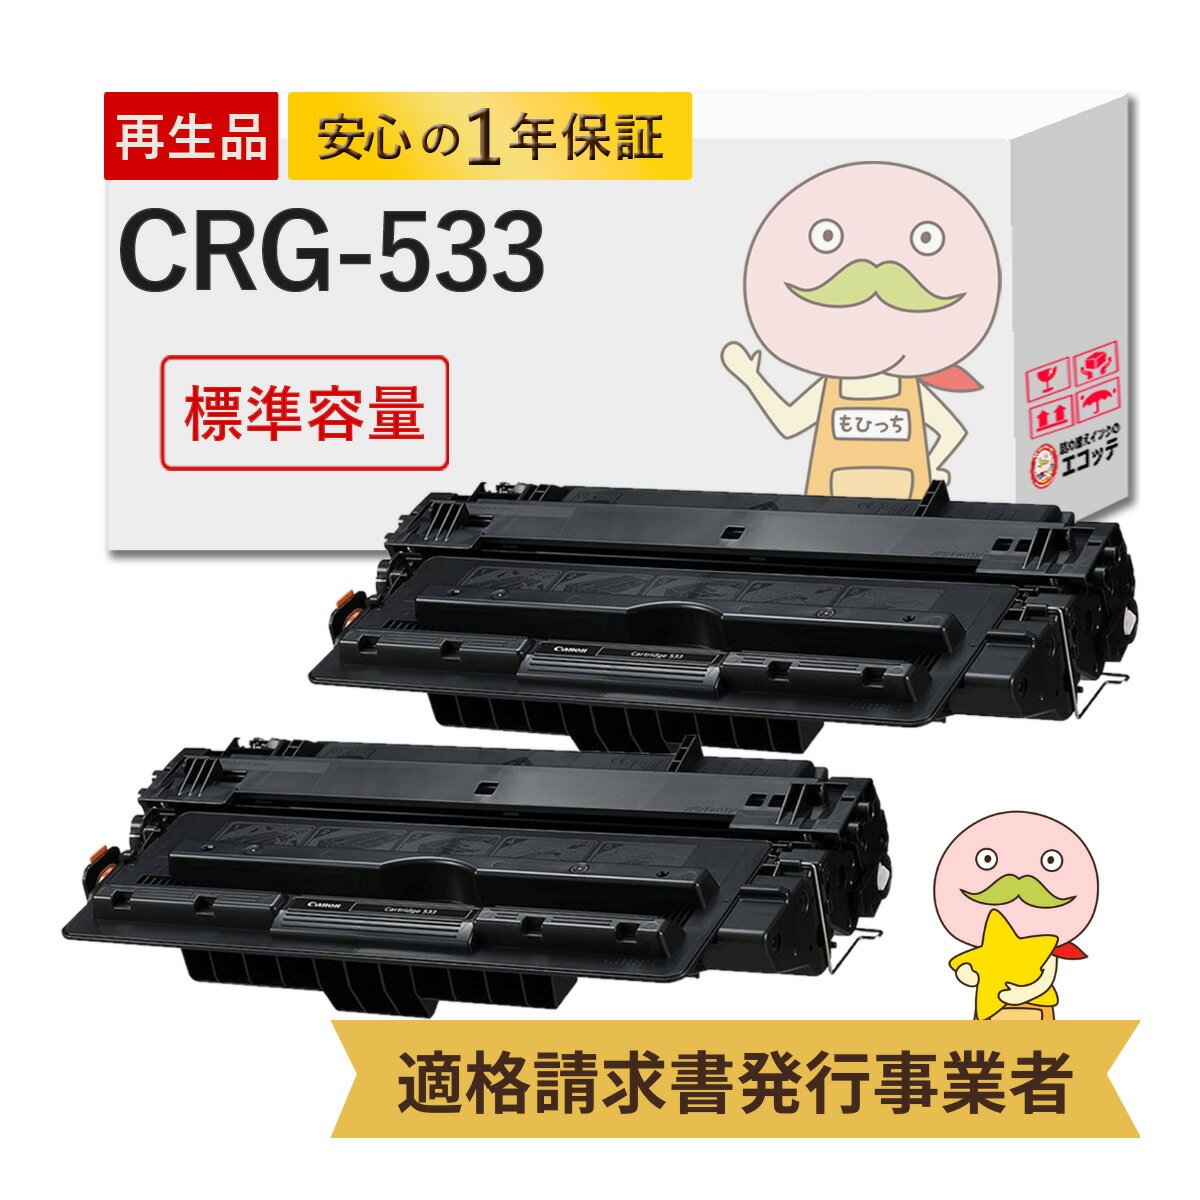 CRG-533 リサイクルトナー ブラック ( 黒 ) 2本セット Canon ( キヤノン / キャノン )用 ┃ キャノンプリンターインクカートリッジ リサイクルトナー 533 コピー機 レーザー lbp8100 lbp8100 トナー lbp8100 リサイクルトナー crg-533 lbp8